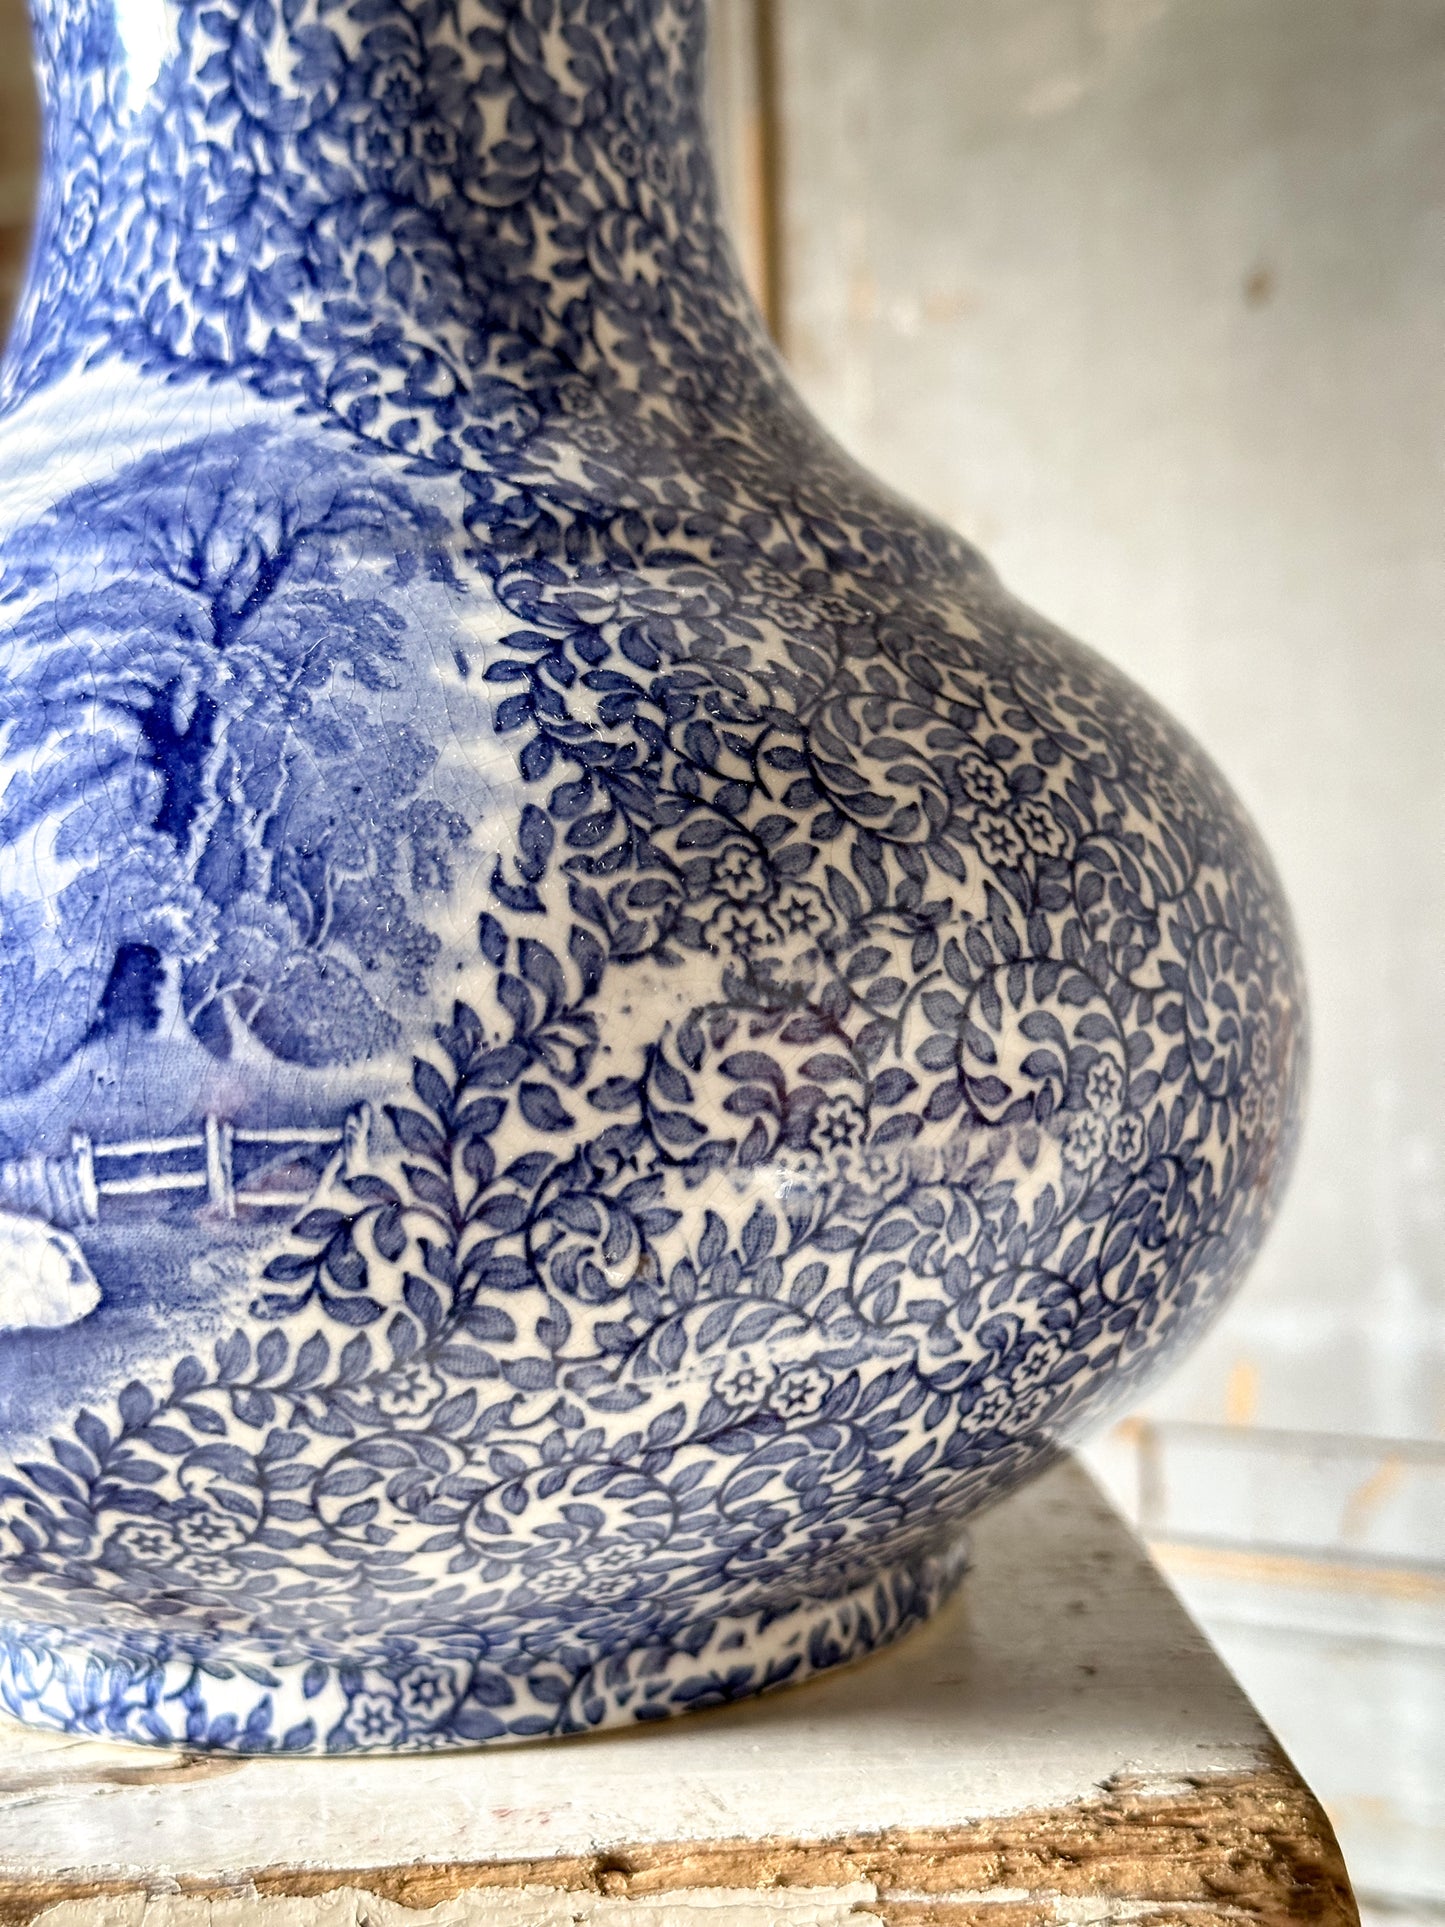 A stunning vintage blue and white Fenton ‘Ye Olde’ Foley Ware vase